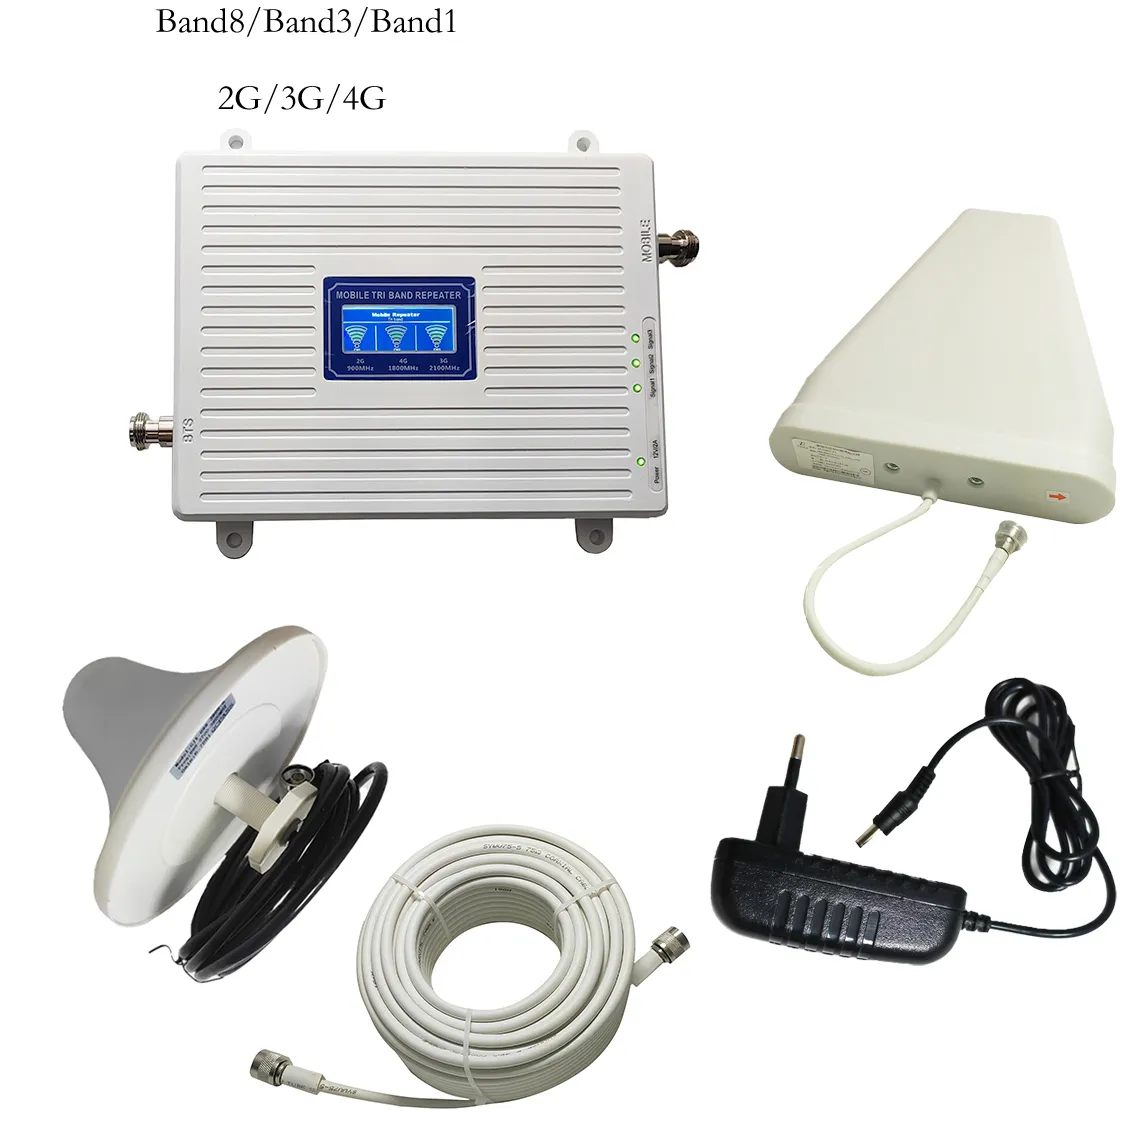 900-1800-2100MHz 2G 3G 4G Handy-Netzwerk-Repeater/Booster/Signal verstärker